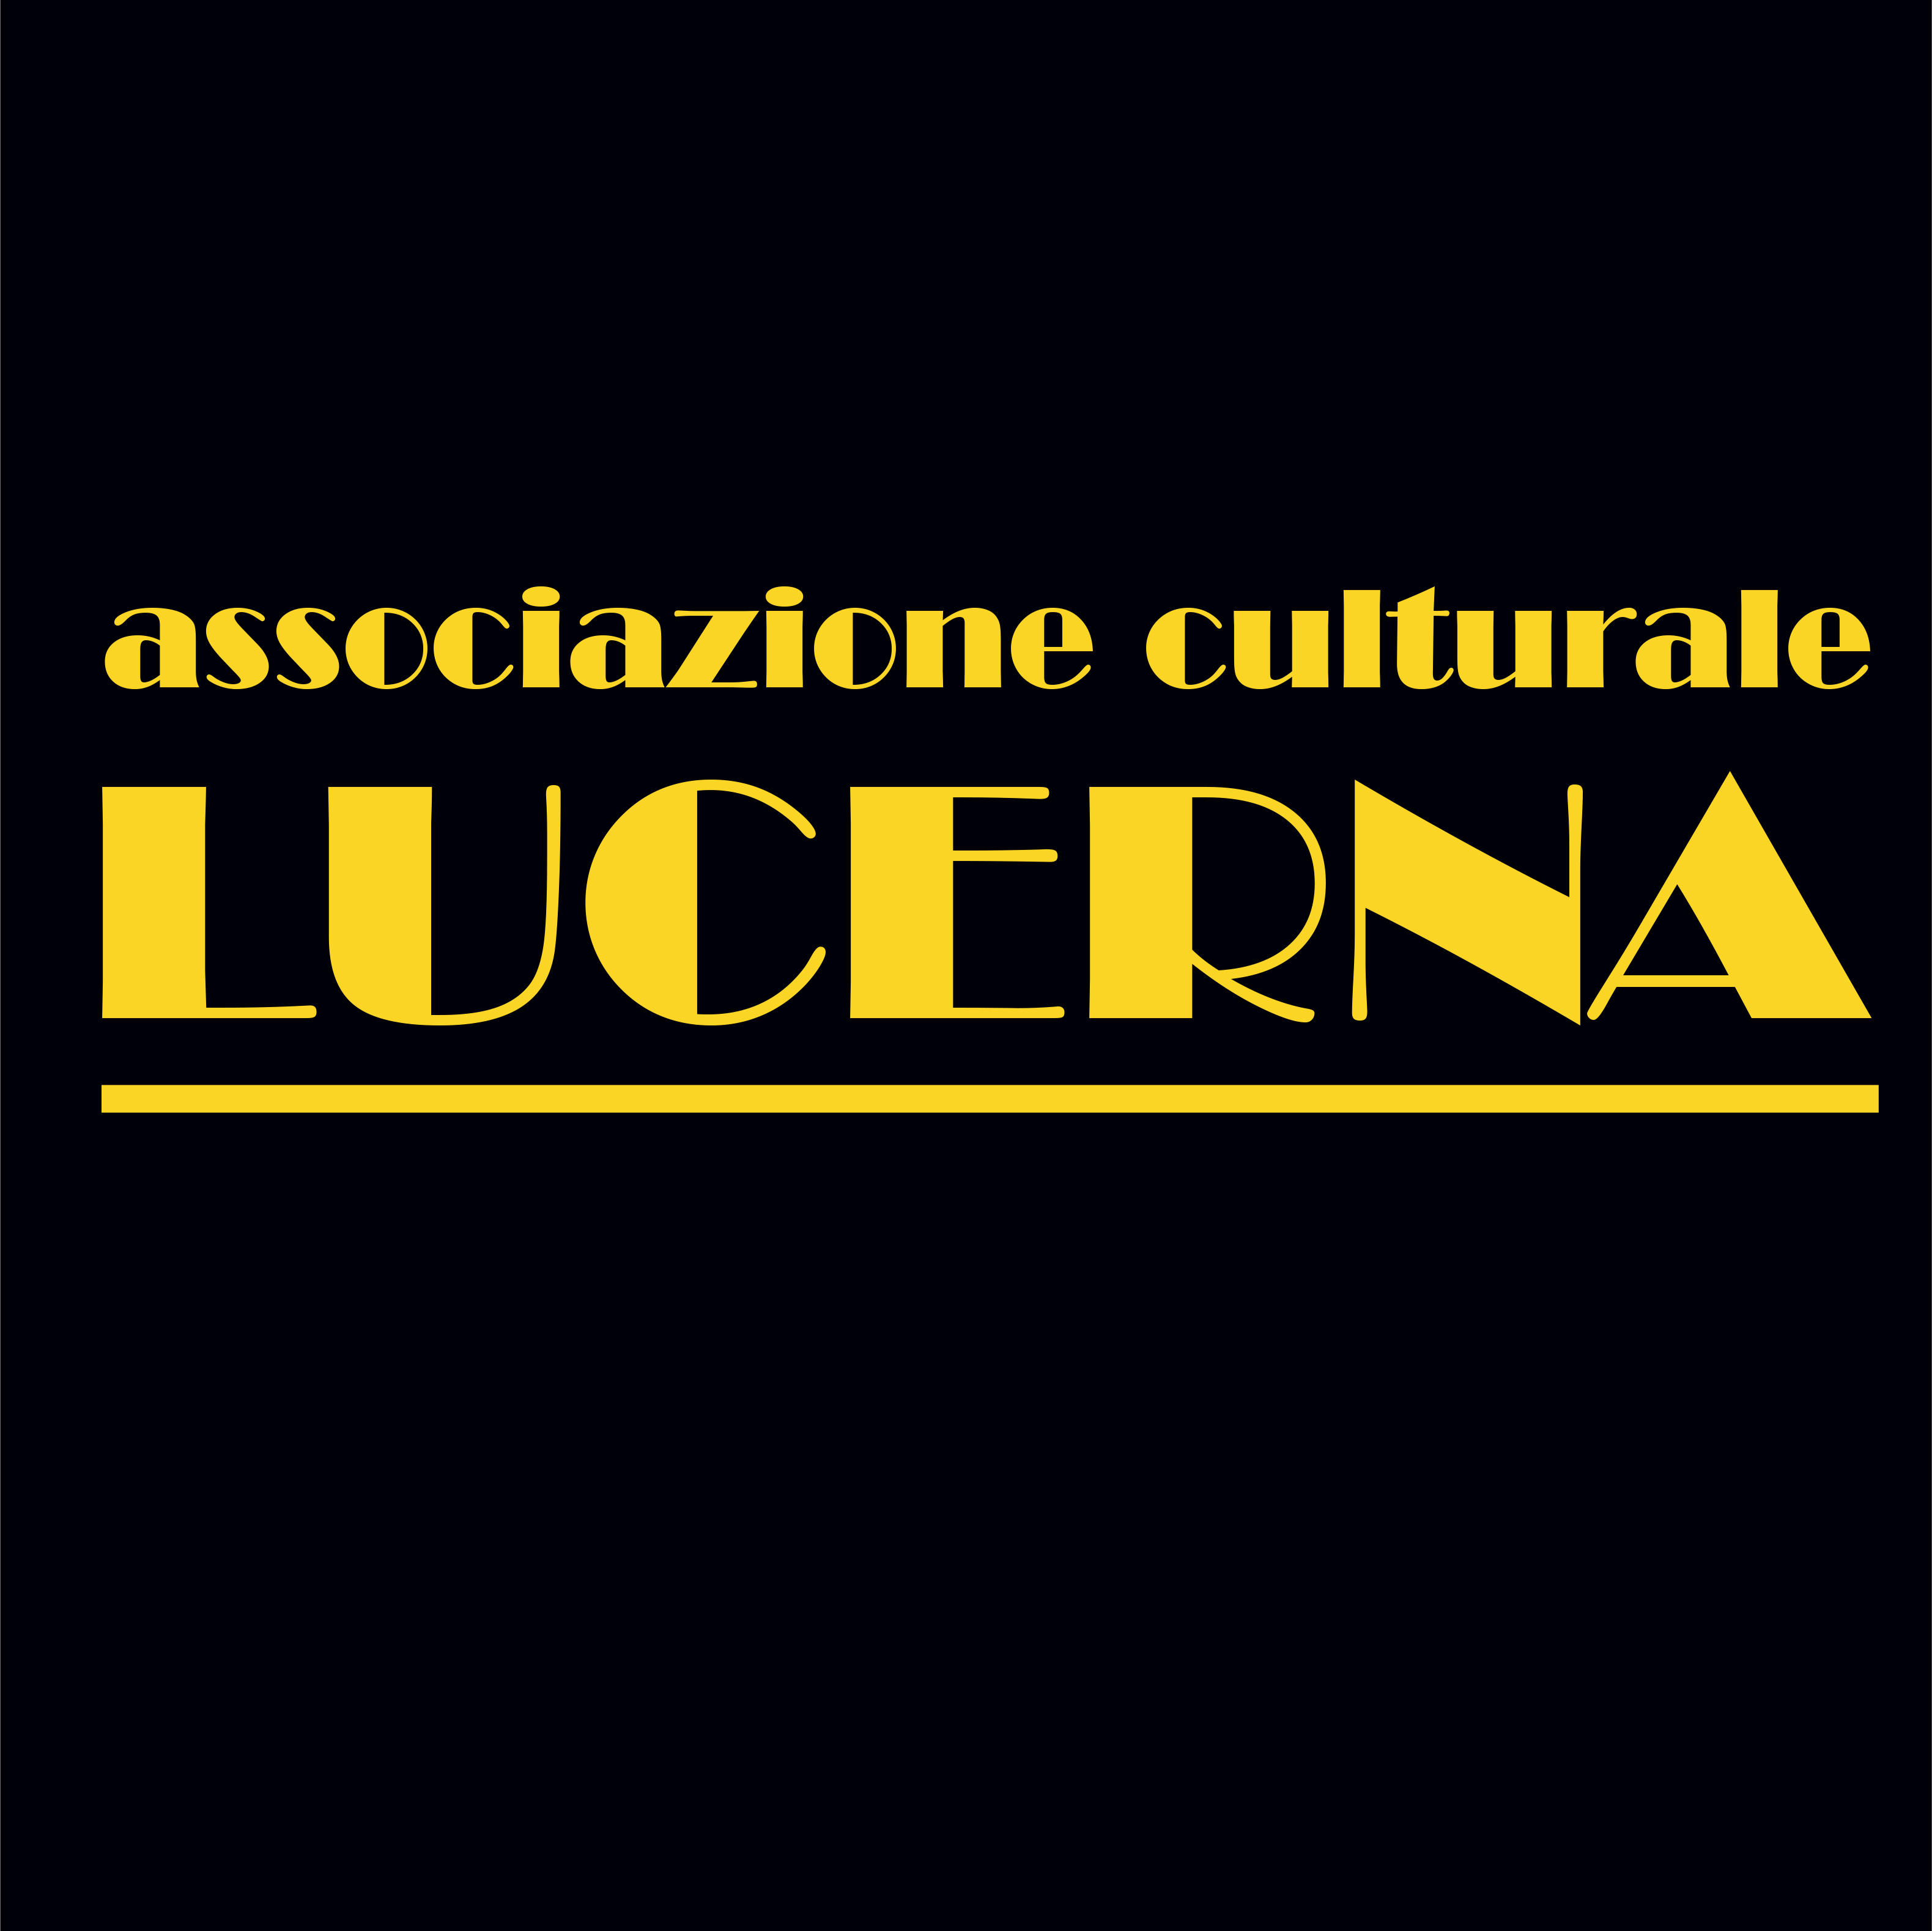 Associazione culturale LUCERNA